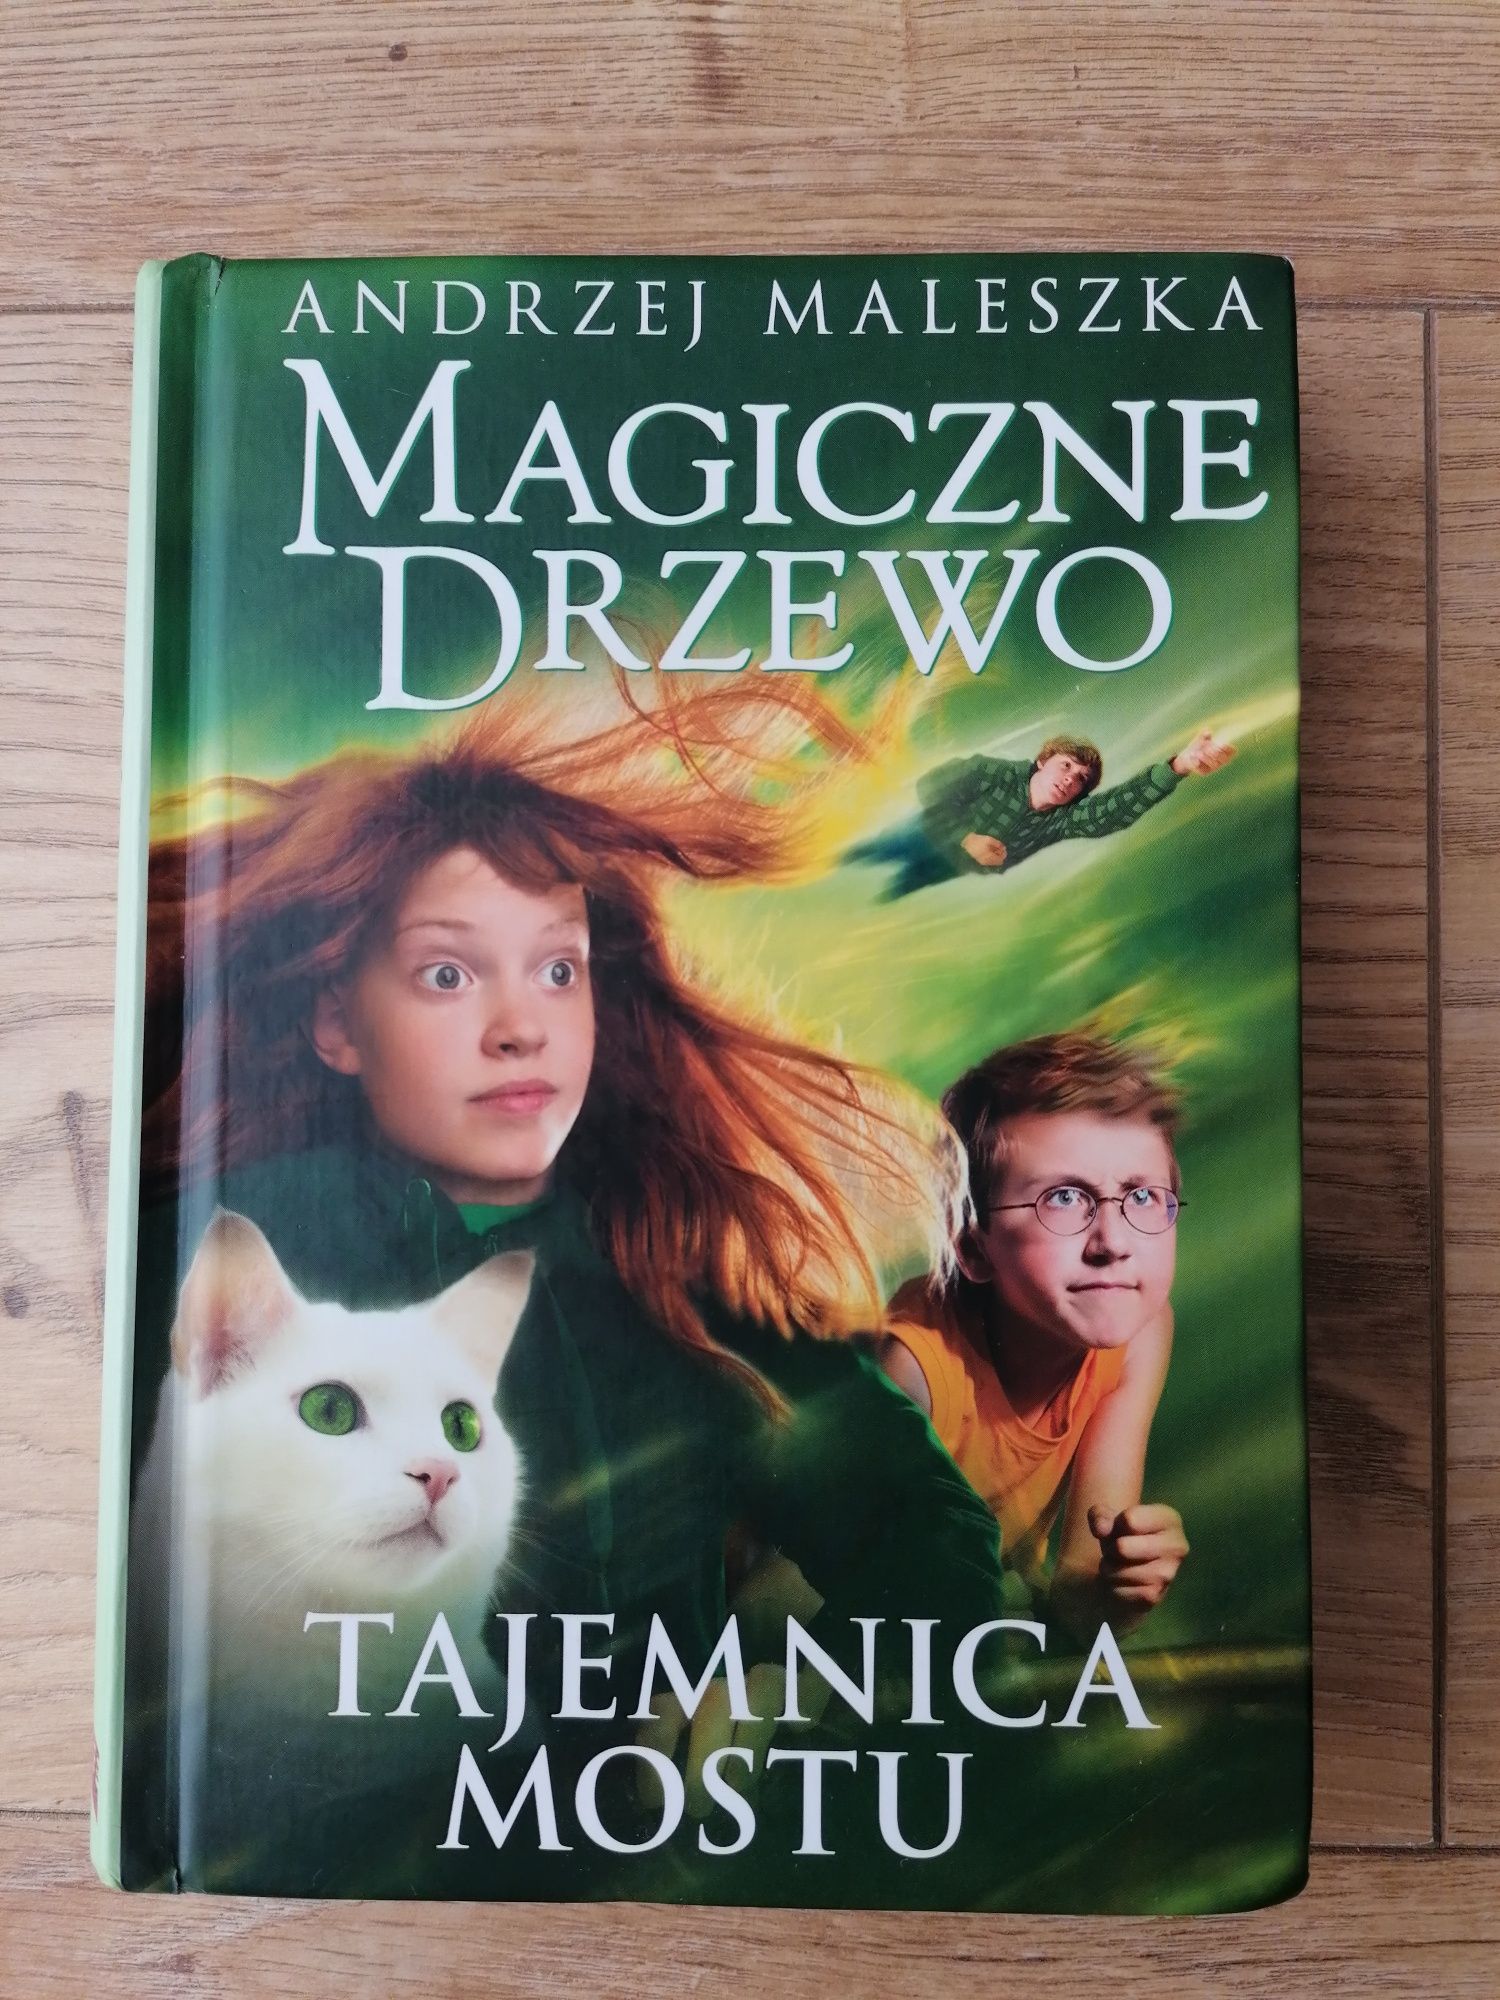 Książka "Magiczne drzewo: Tajemnica Mostu" autor Andrzej Maleszka